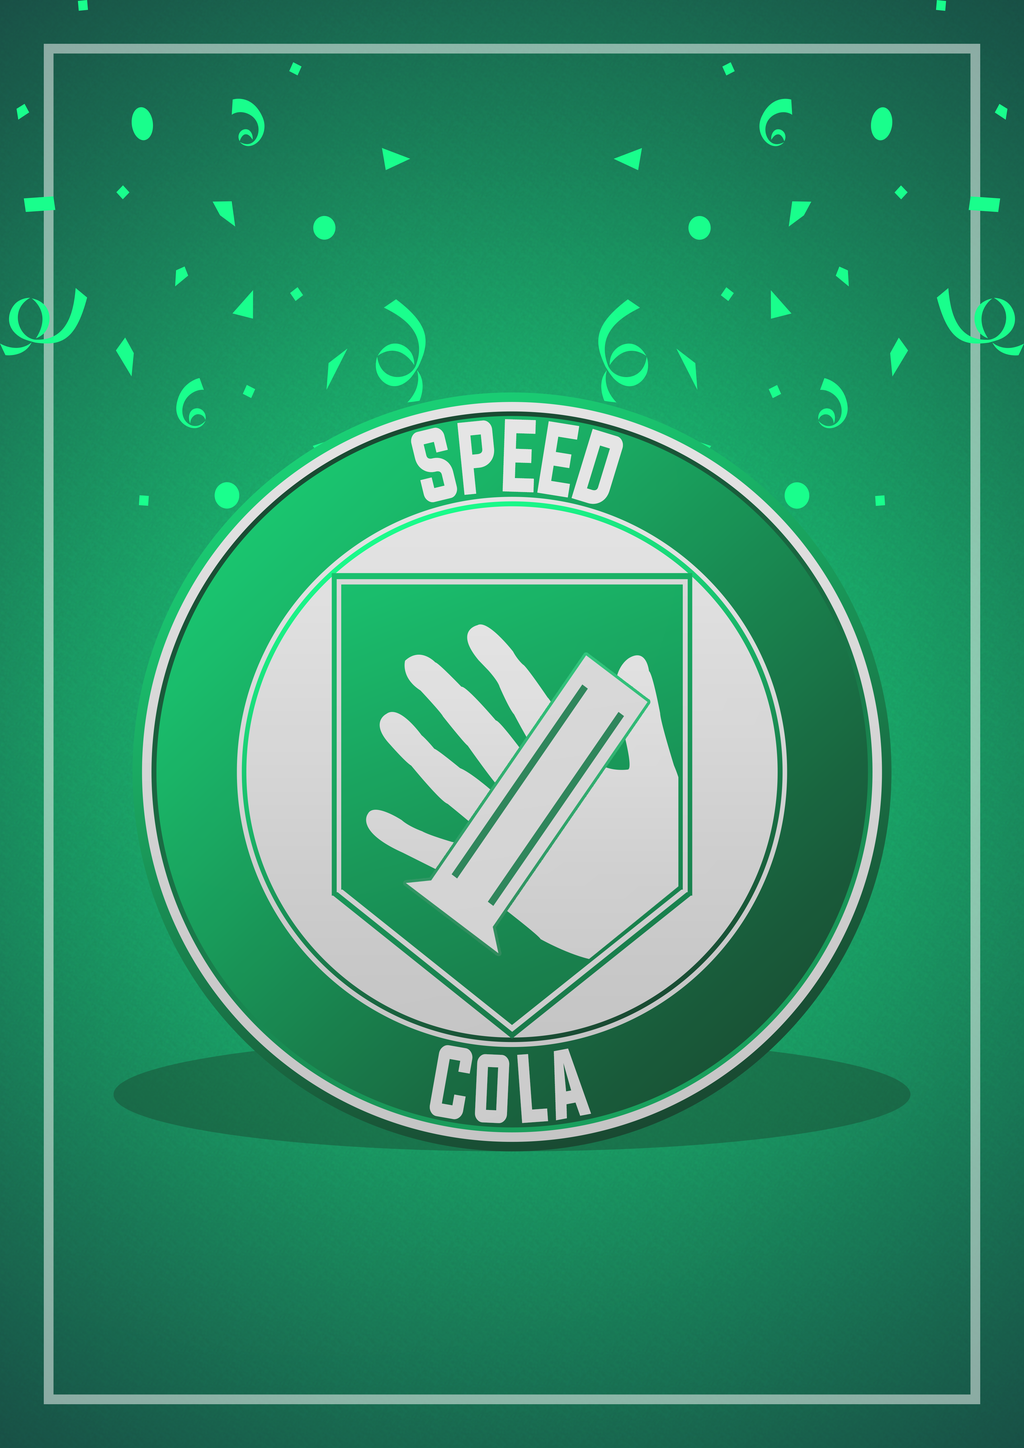 Speed cola Logos